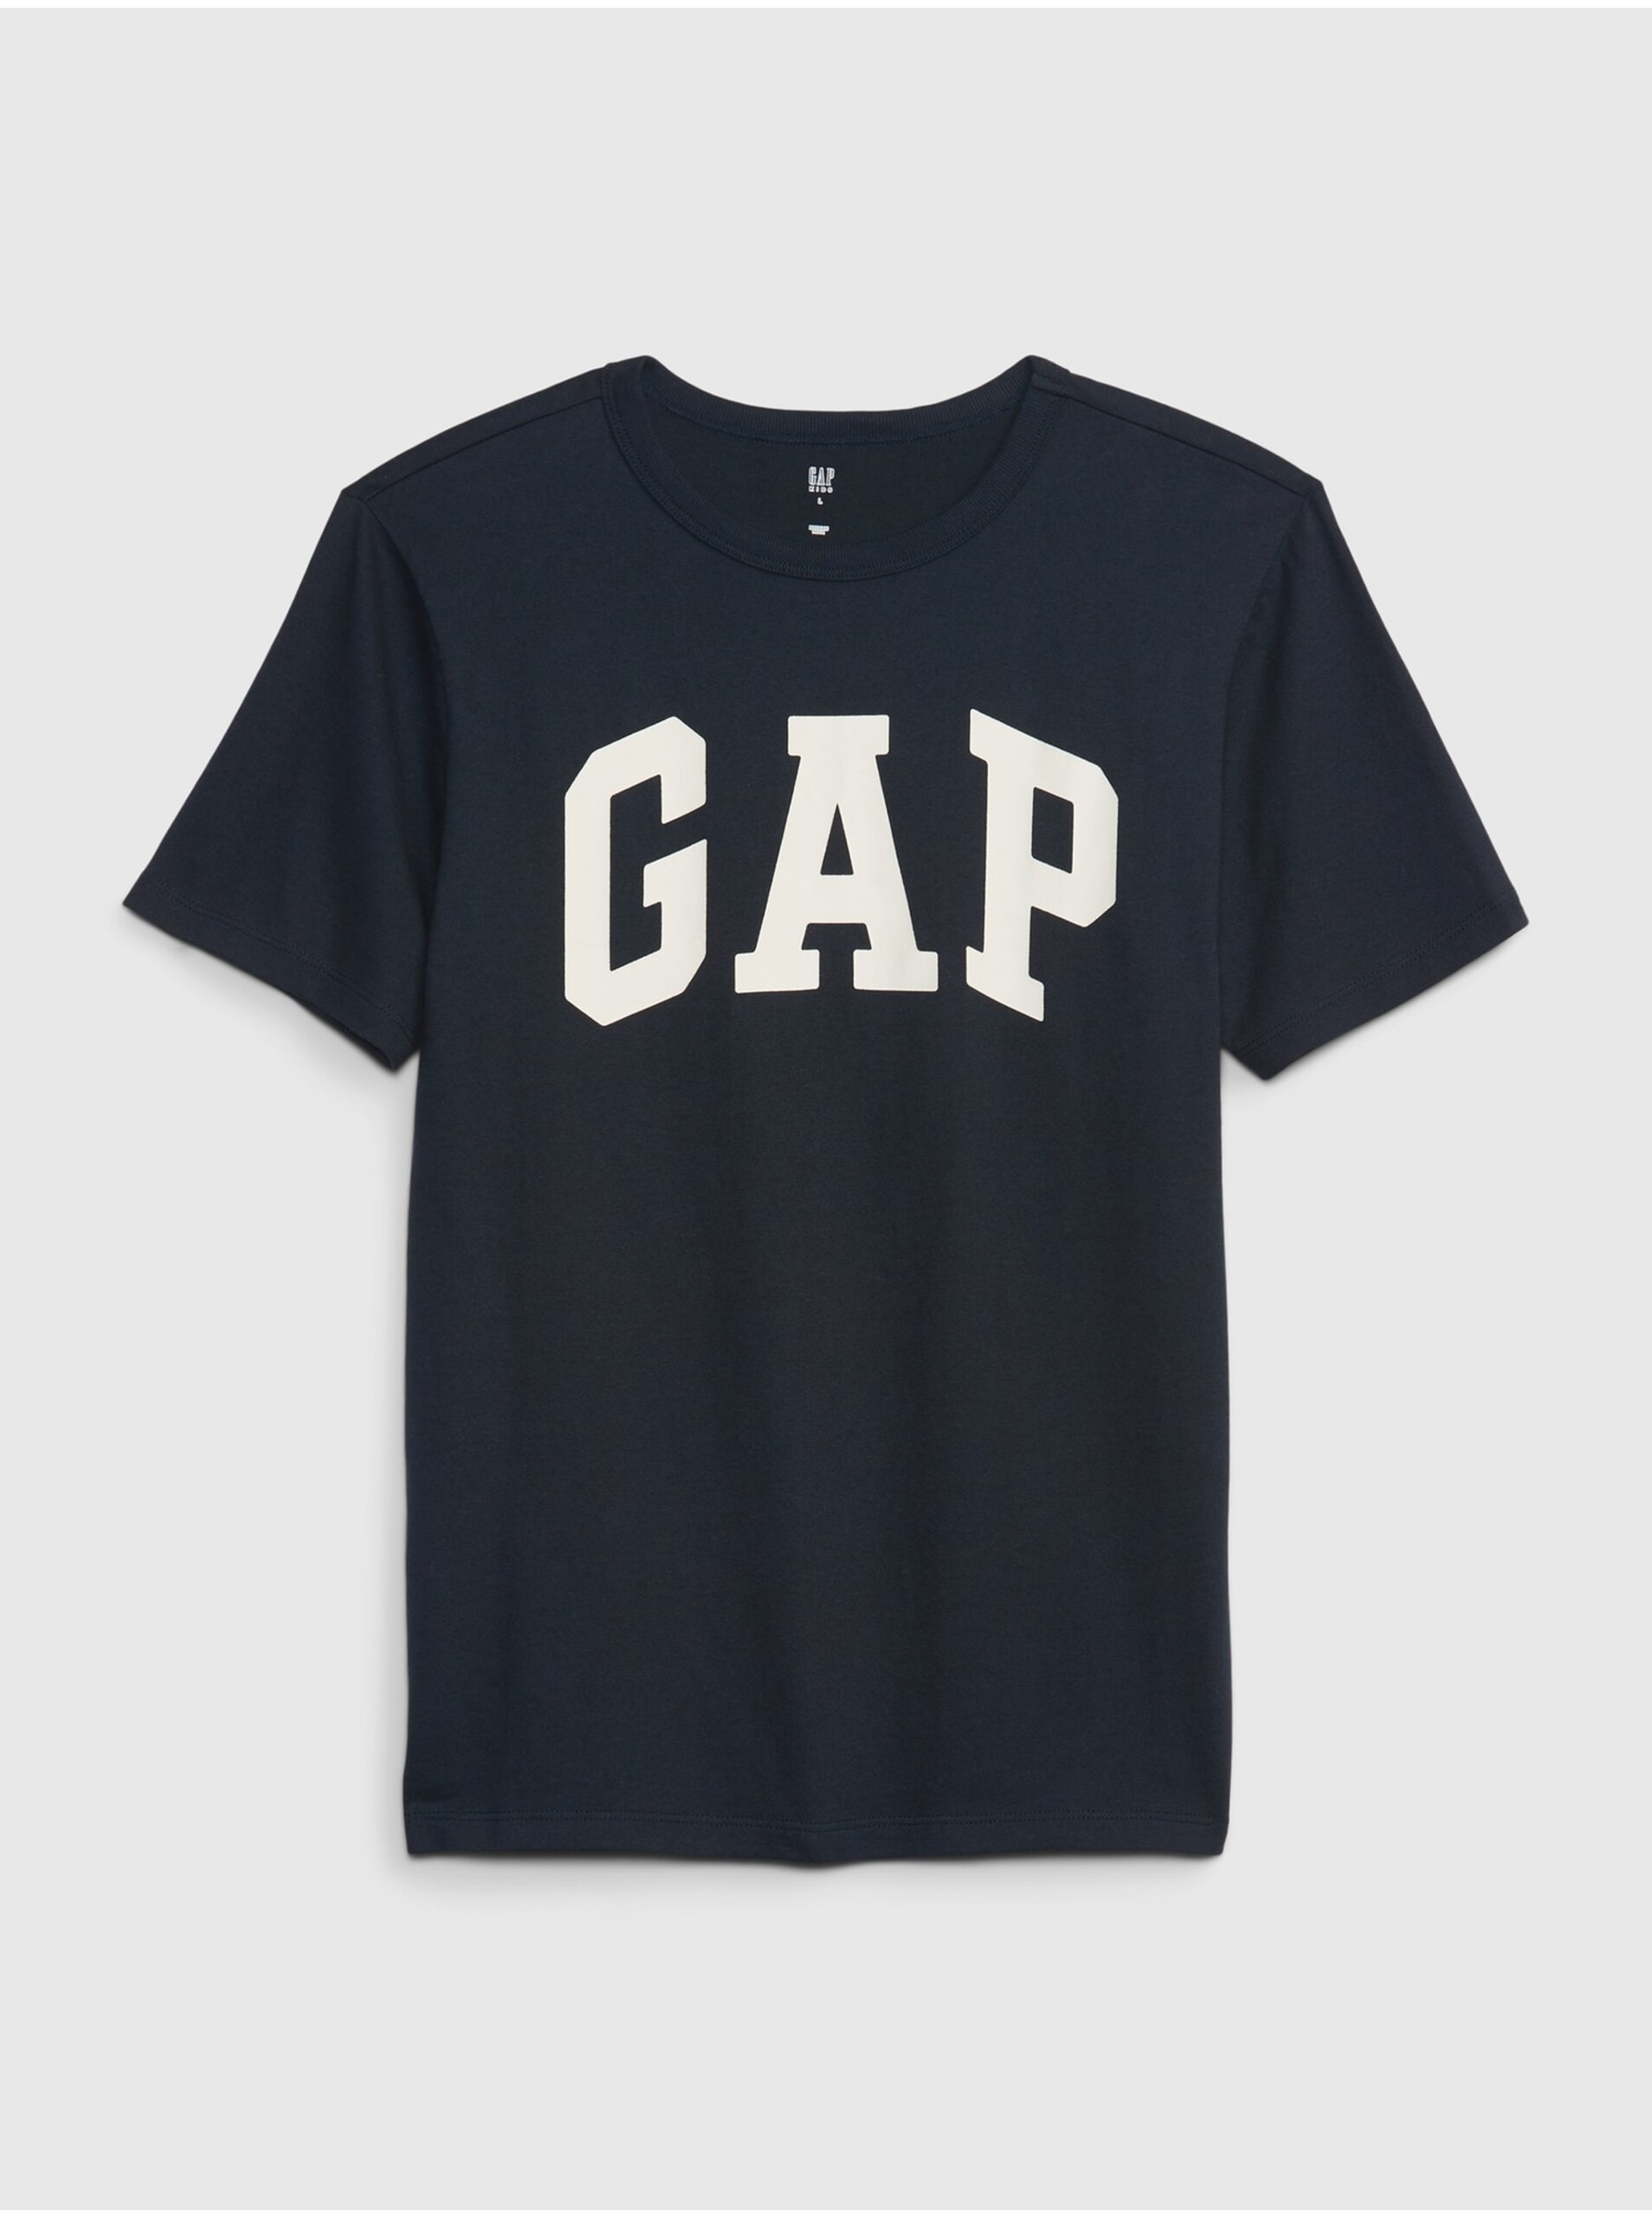 Lacno Tmavomodré chlapčenské tričko s logom GAP